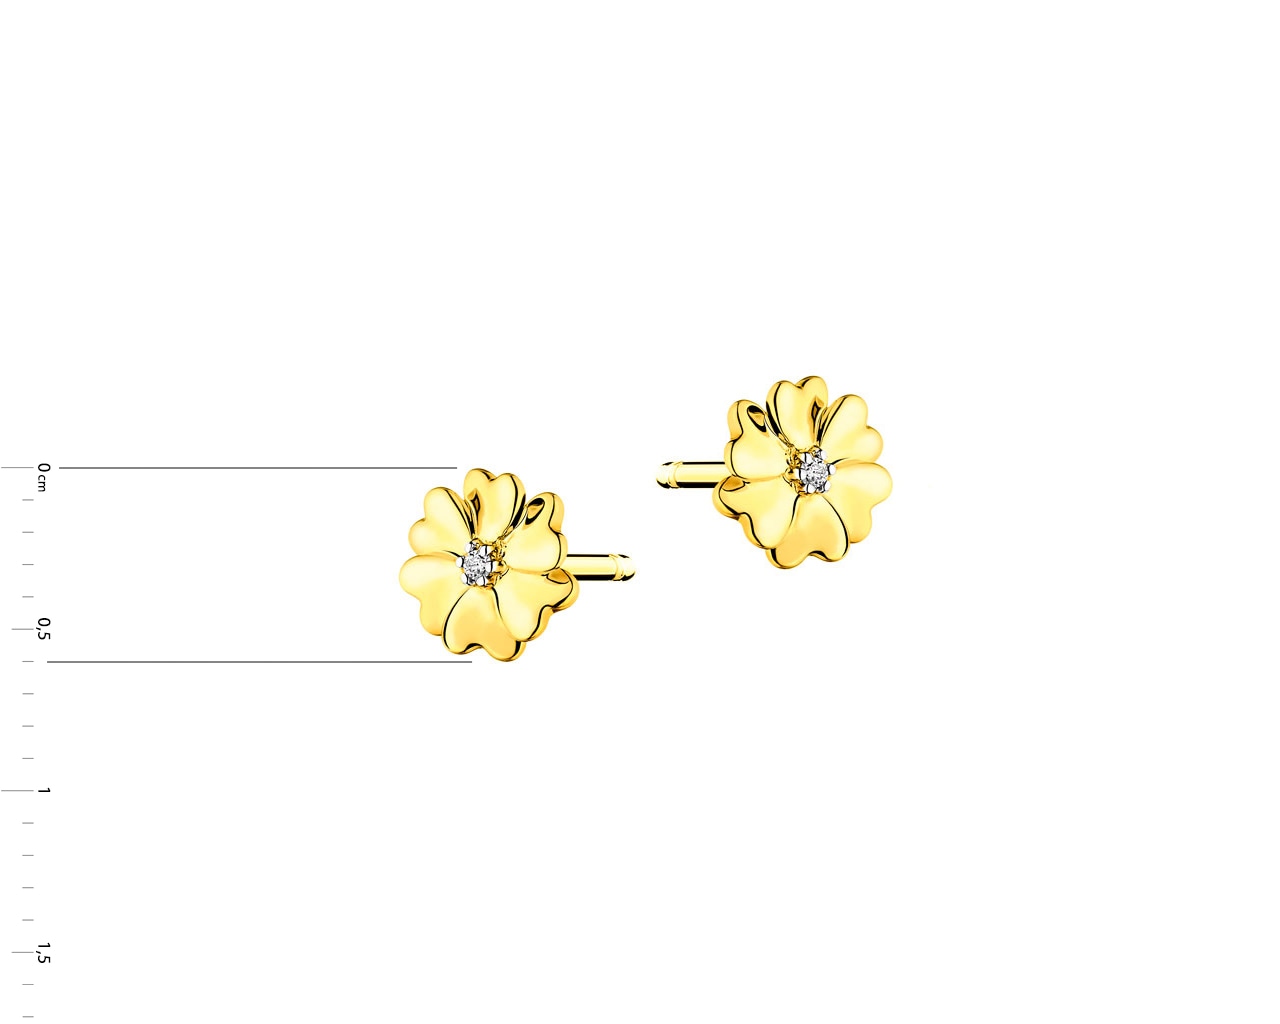 Kolczyki z żółtego złota z brylantem - kwiatki 0,01 ct - próba 375